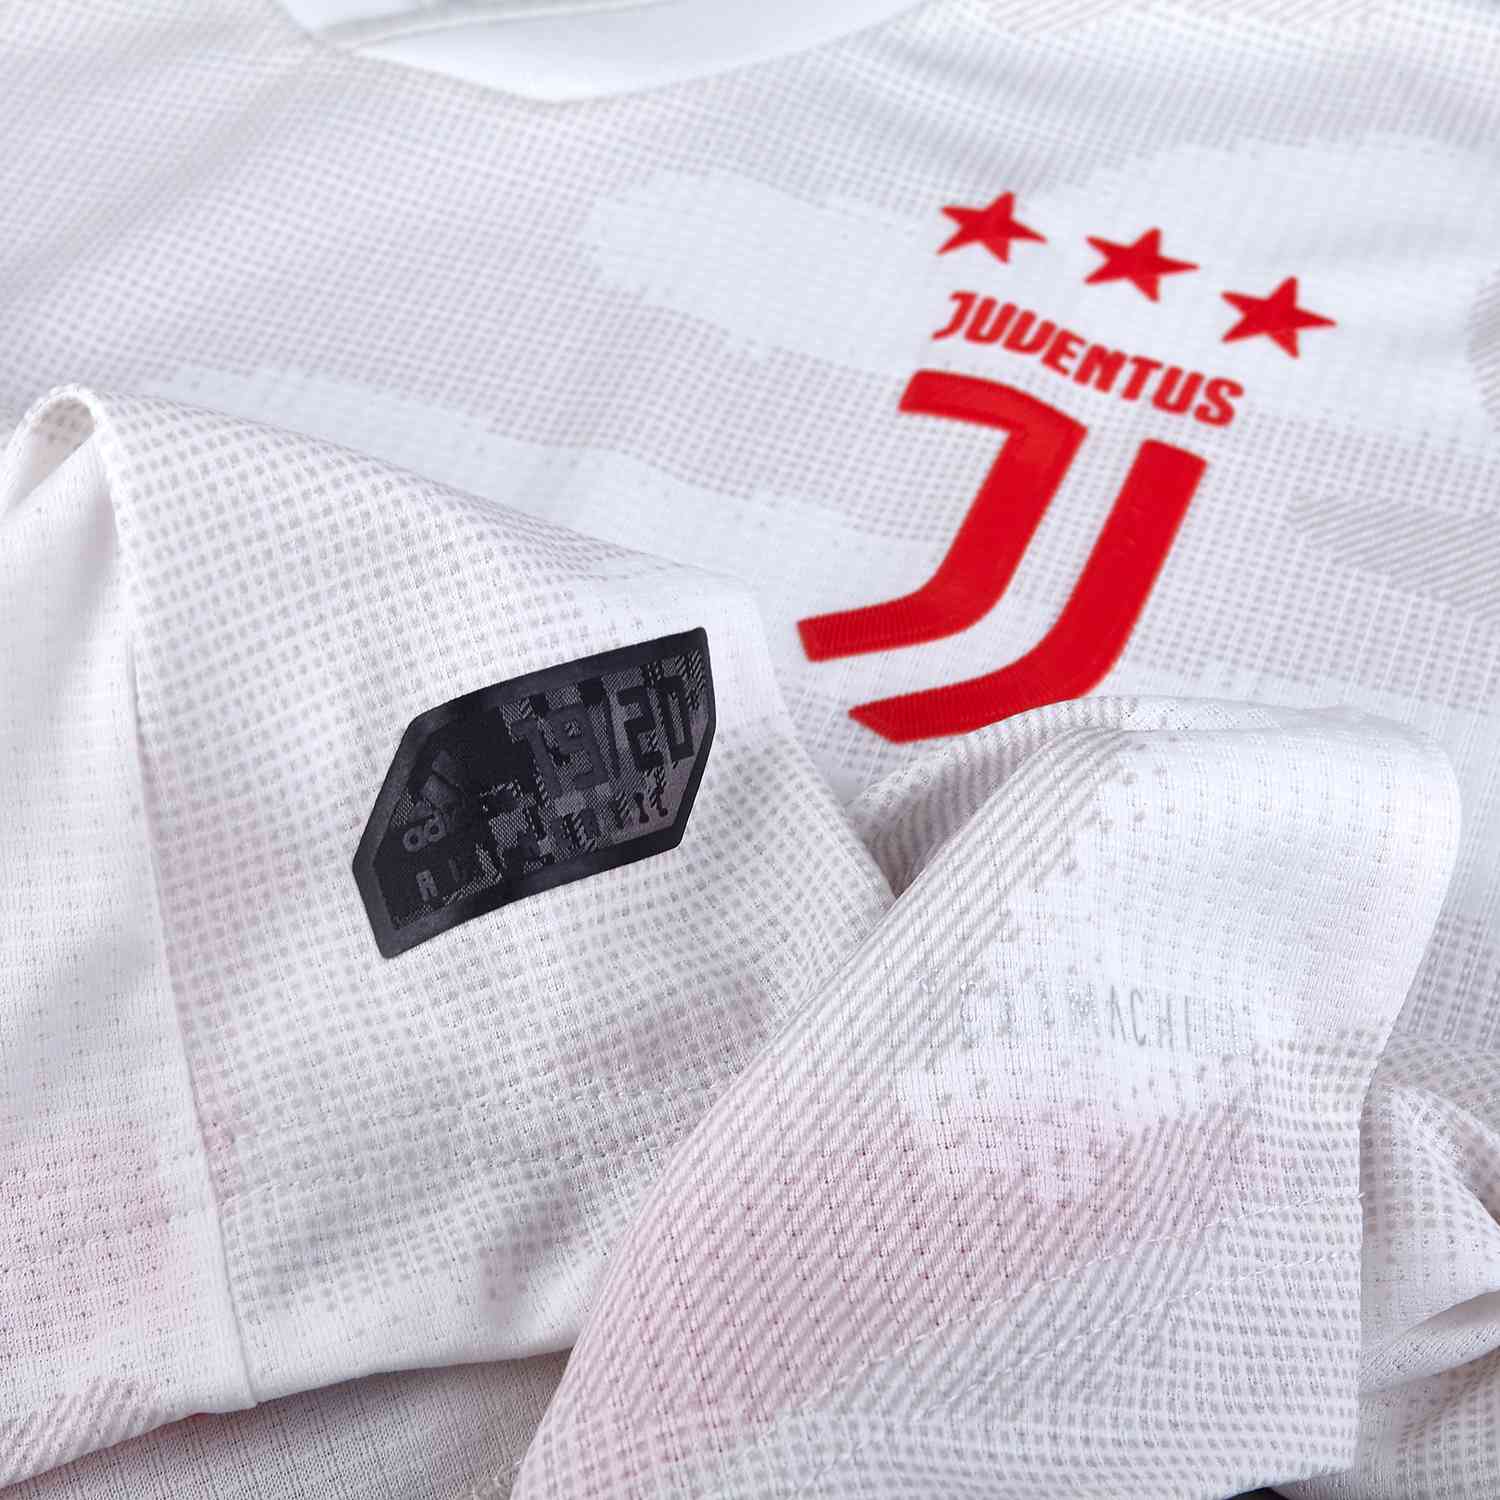 Juventus 2019/20 adidas Away Kit - FOOTBALL FASHION